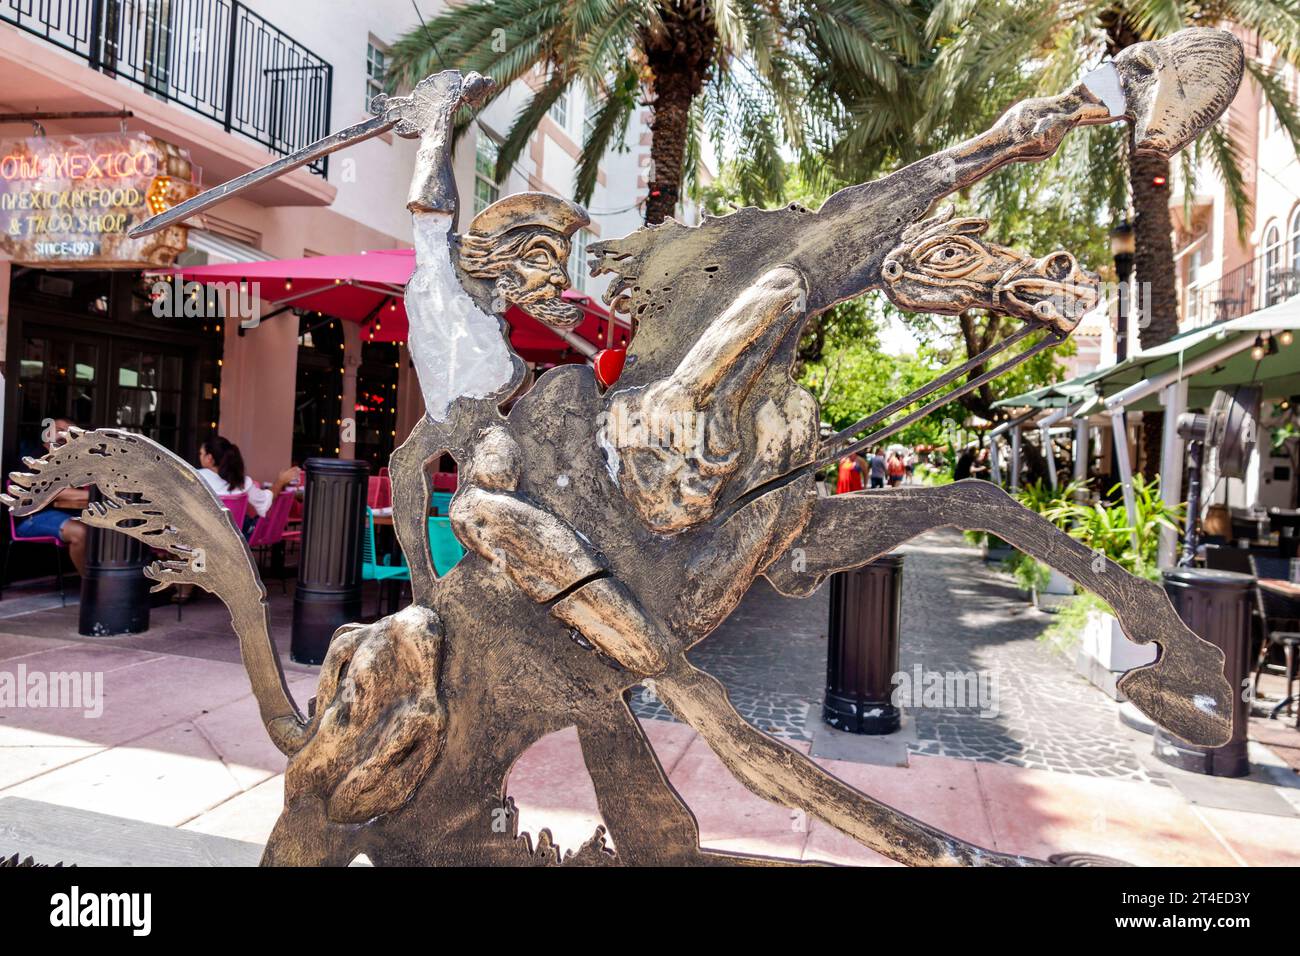 Miami Beach, Florida, Espanola Way, storico villaggio spagnolo, esterno, ingresso frontale dell'edificio, opere d'arte, scultura Don Chisciotte, personaggio f Foto Stock